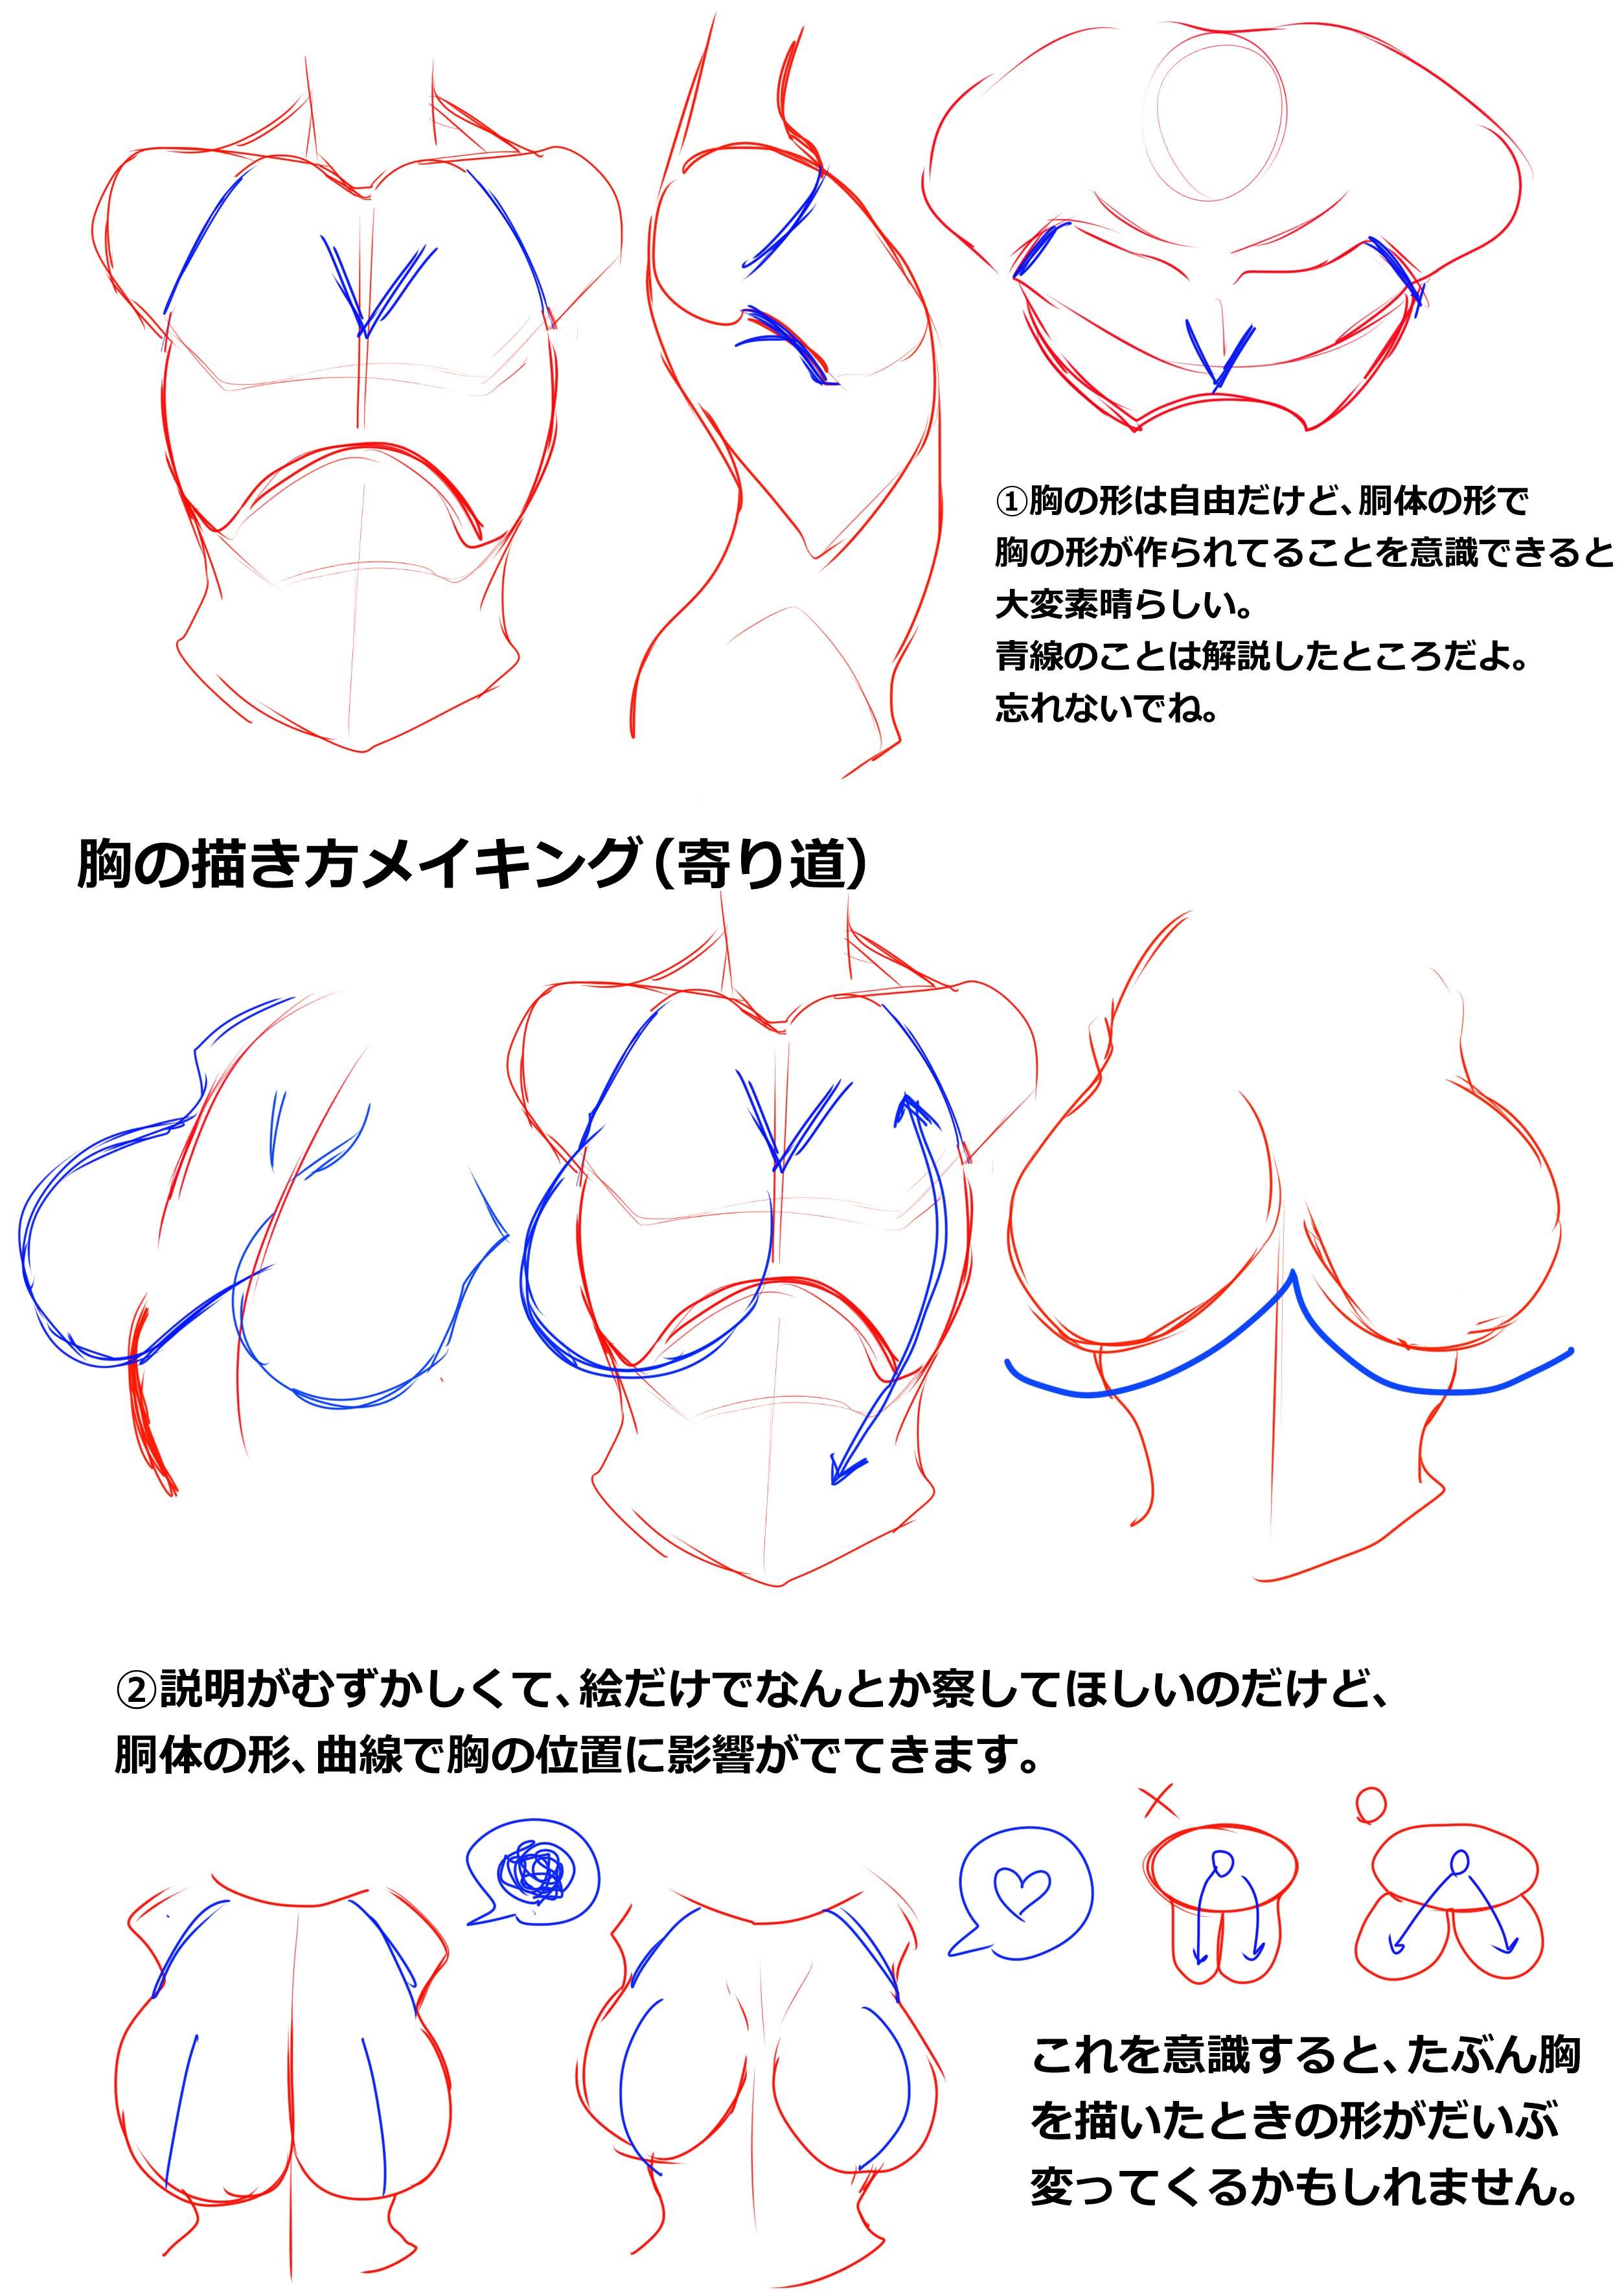 как нарисовать грудь как у аниме фото 13